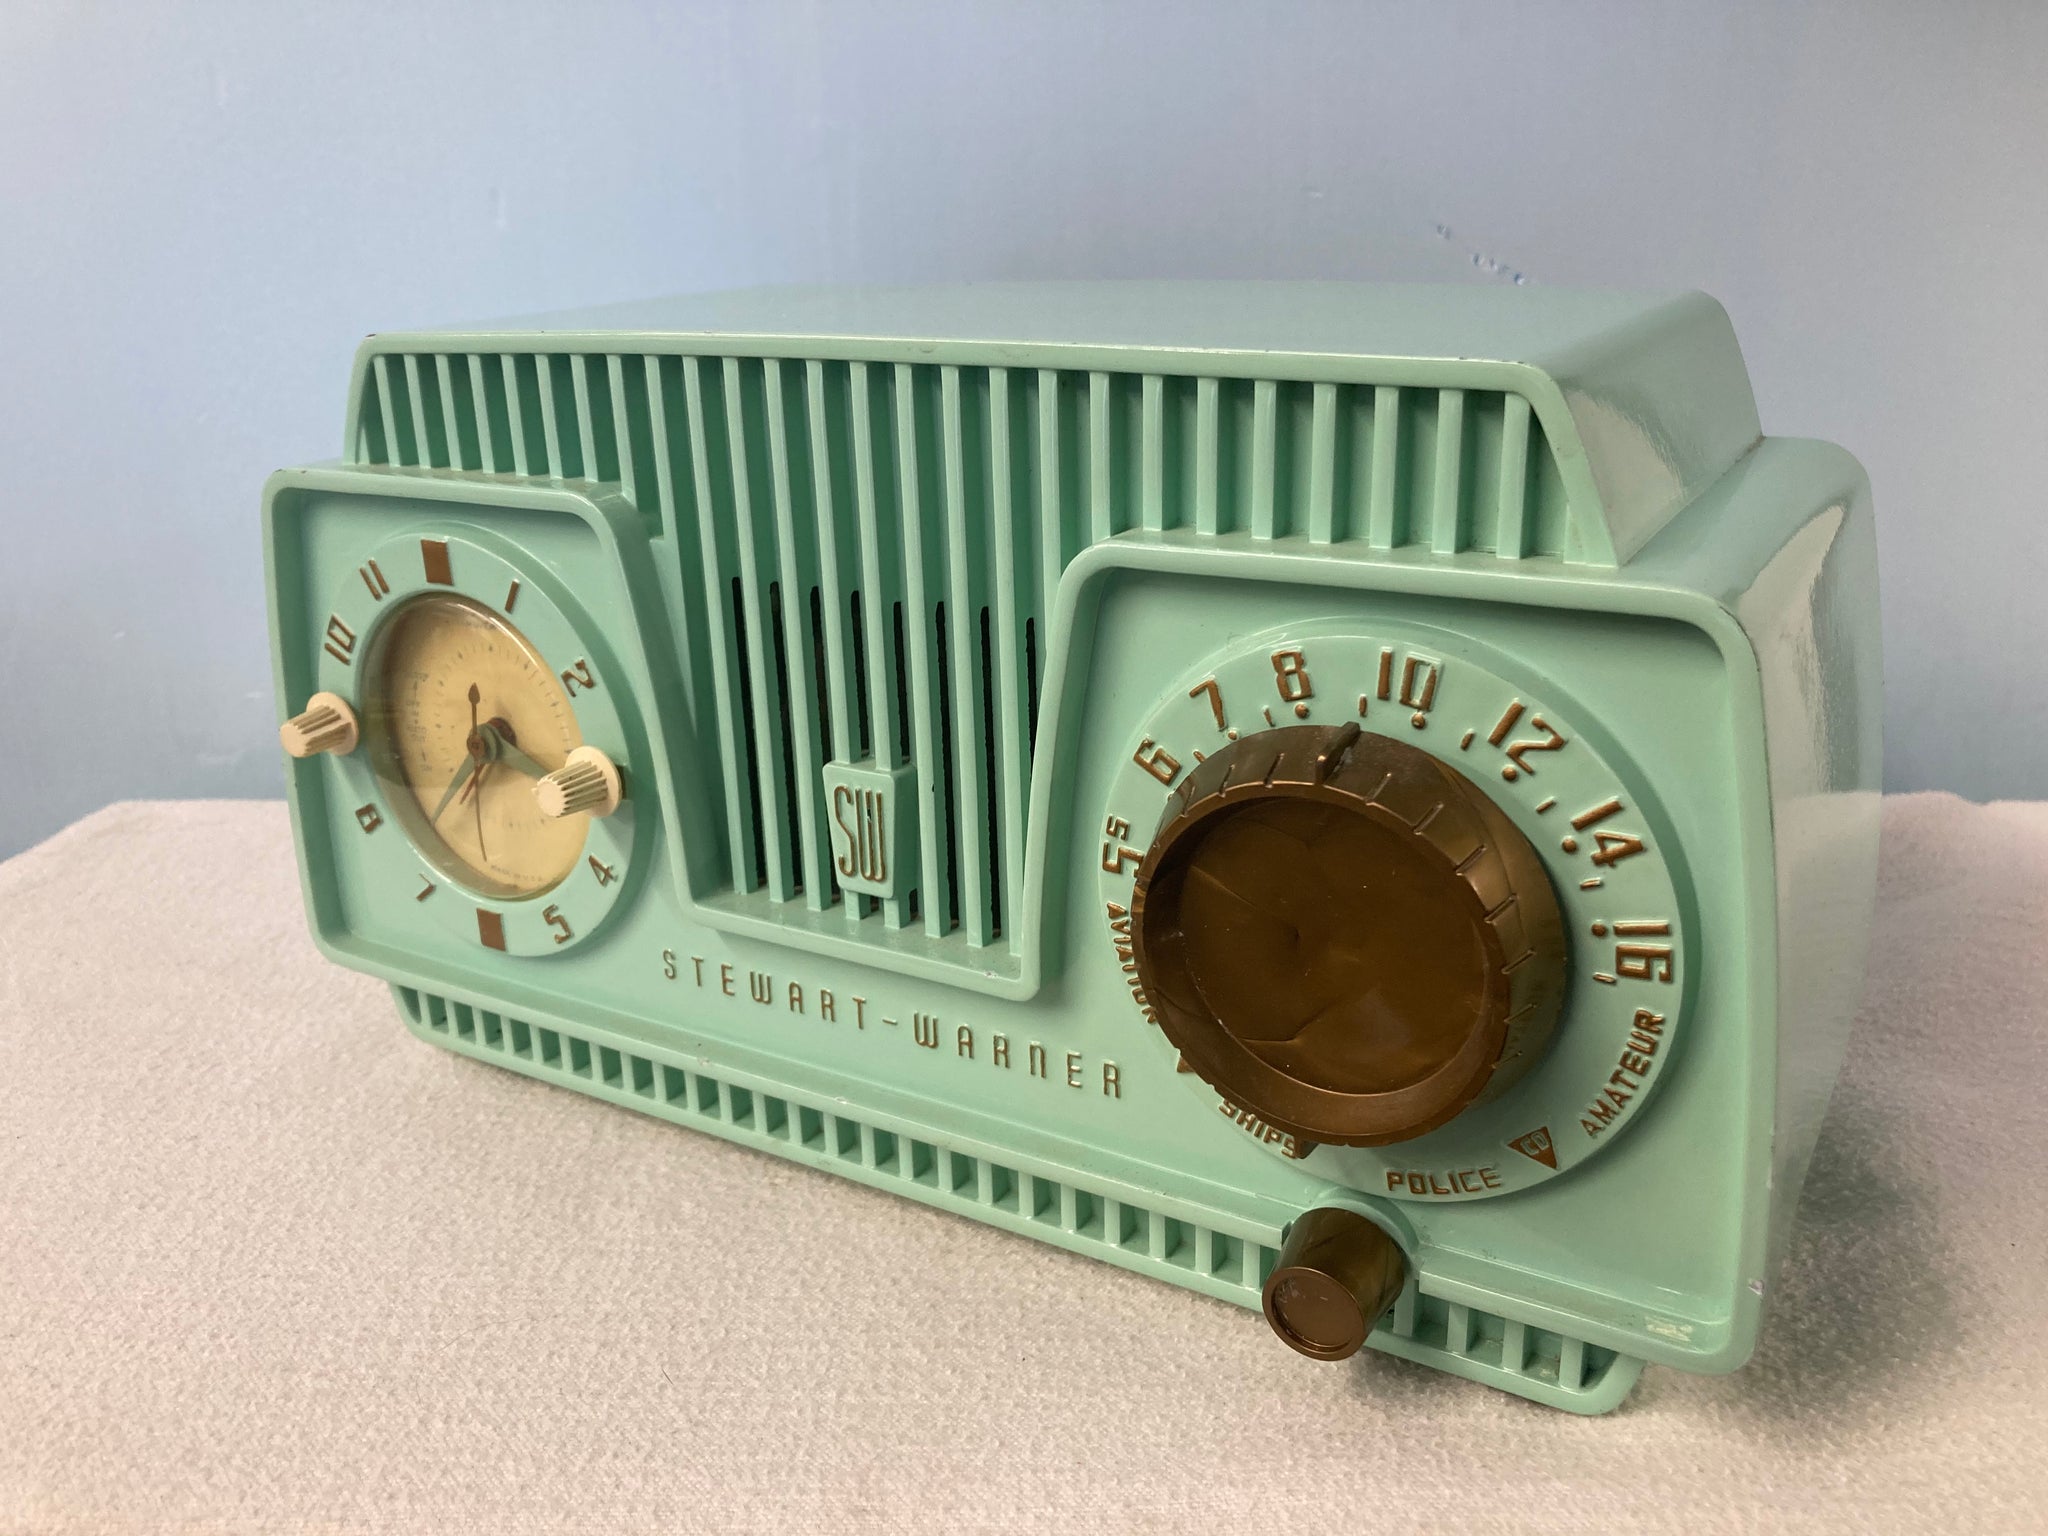 Stewart Warner 9187 Seabreeze Green Tube Radio | Antique, Retro ...